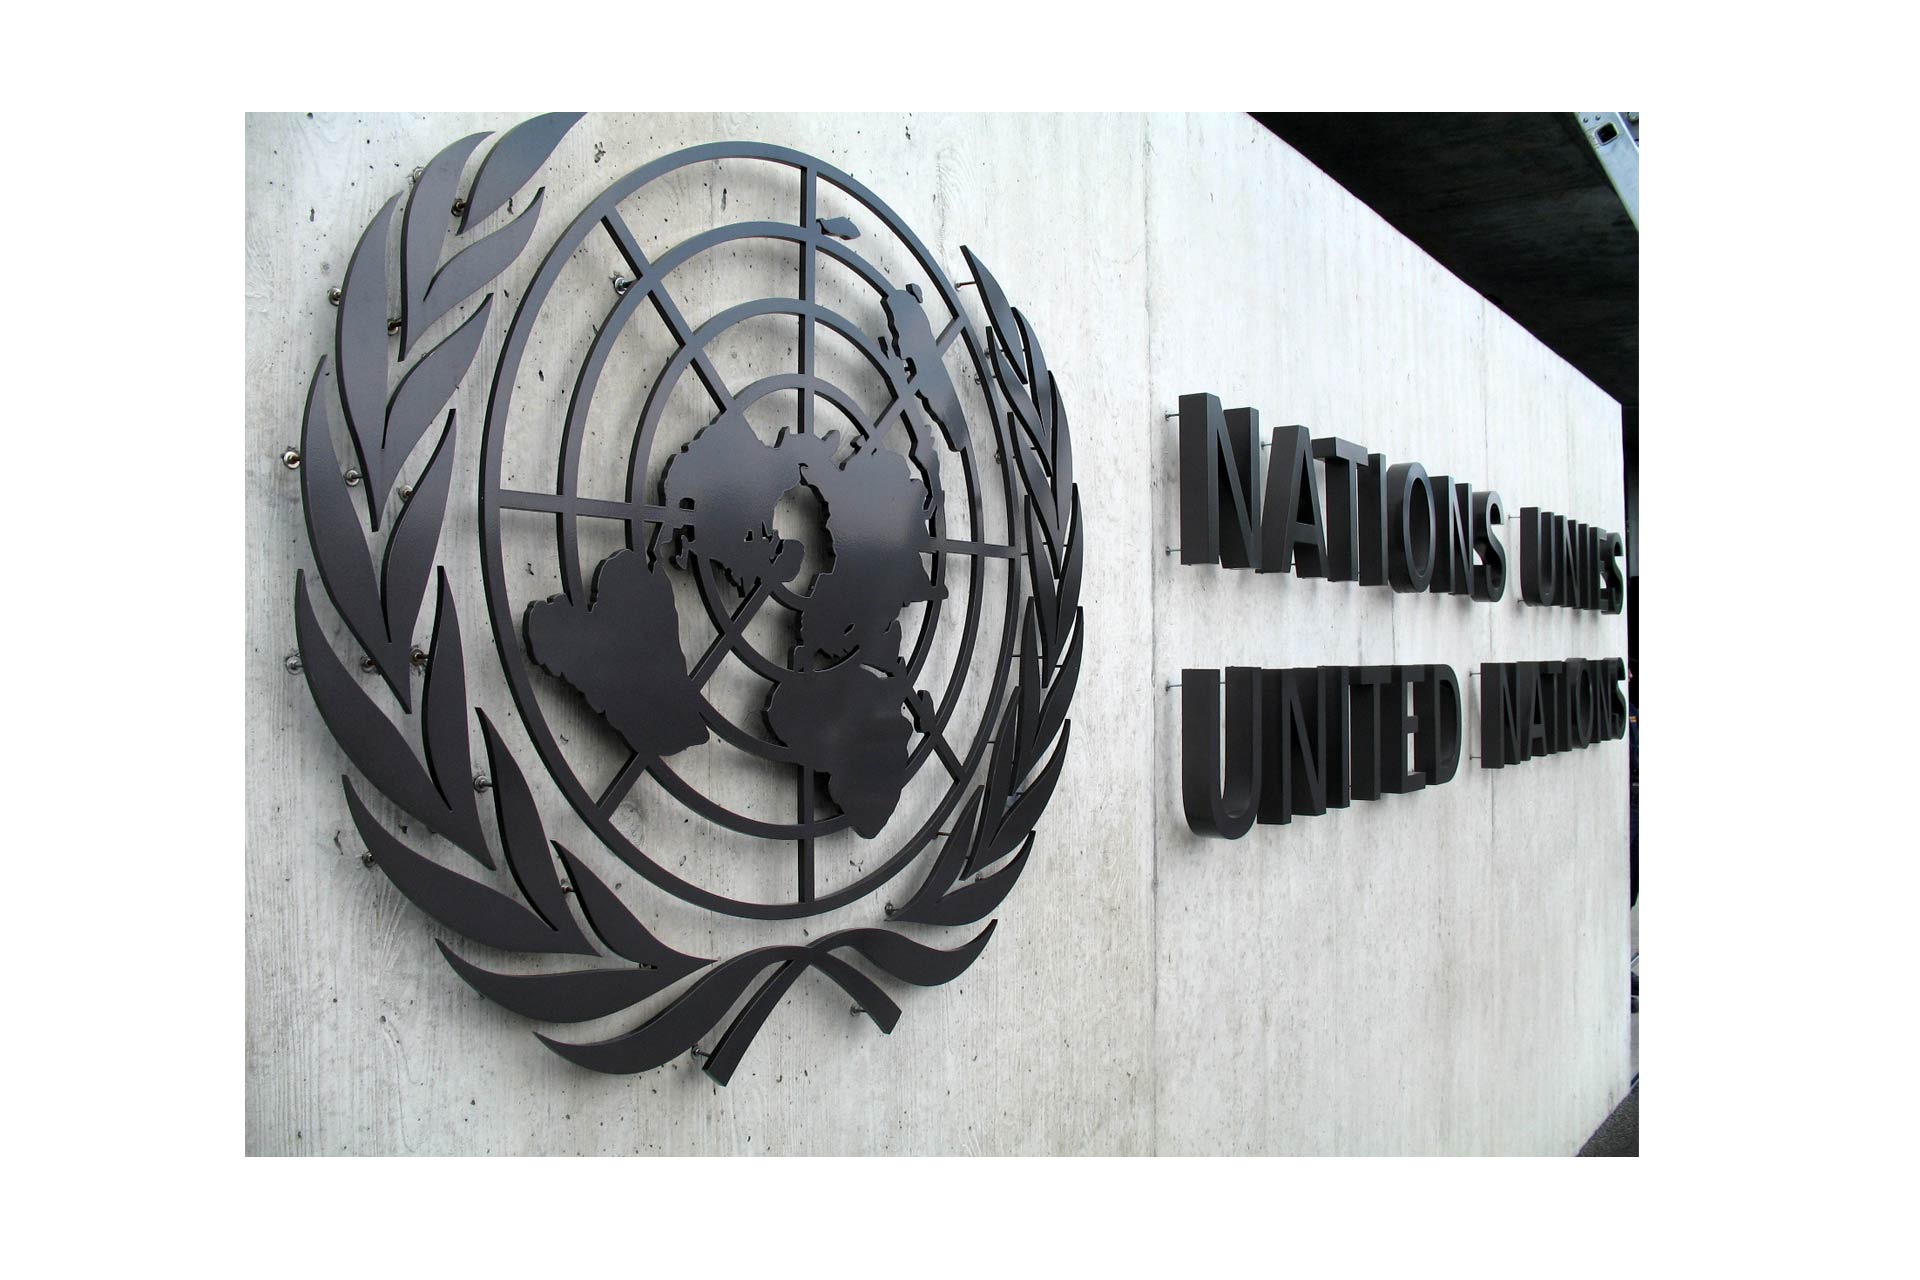 ONU pide a Venezuela aceptar ayuda humanitaria